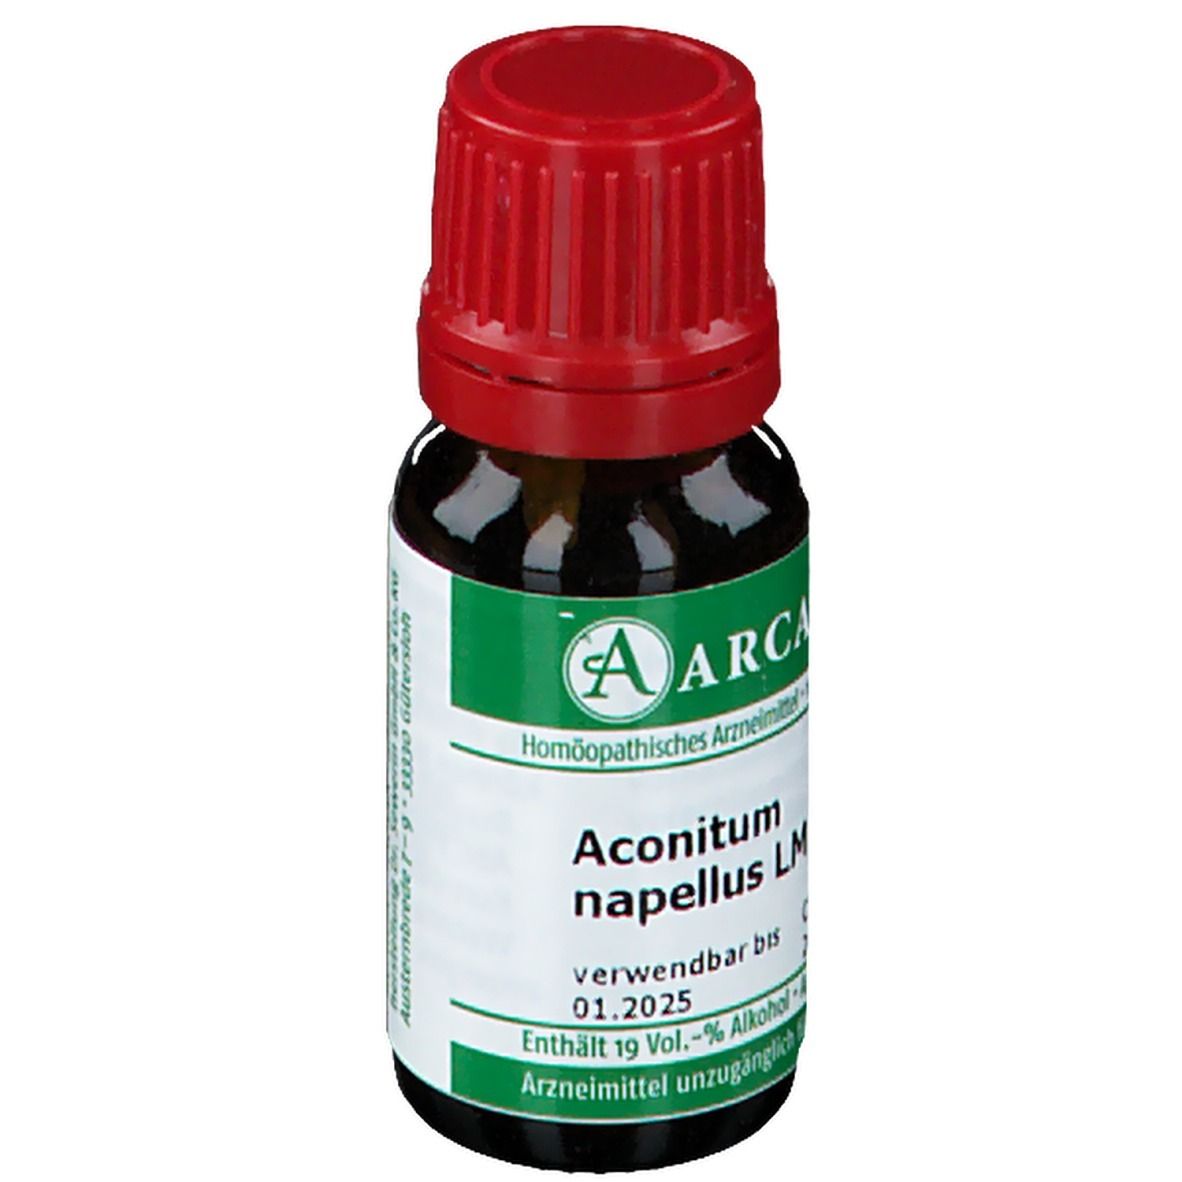 ARCANA® Aconitum napellus LM VI